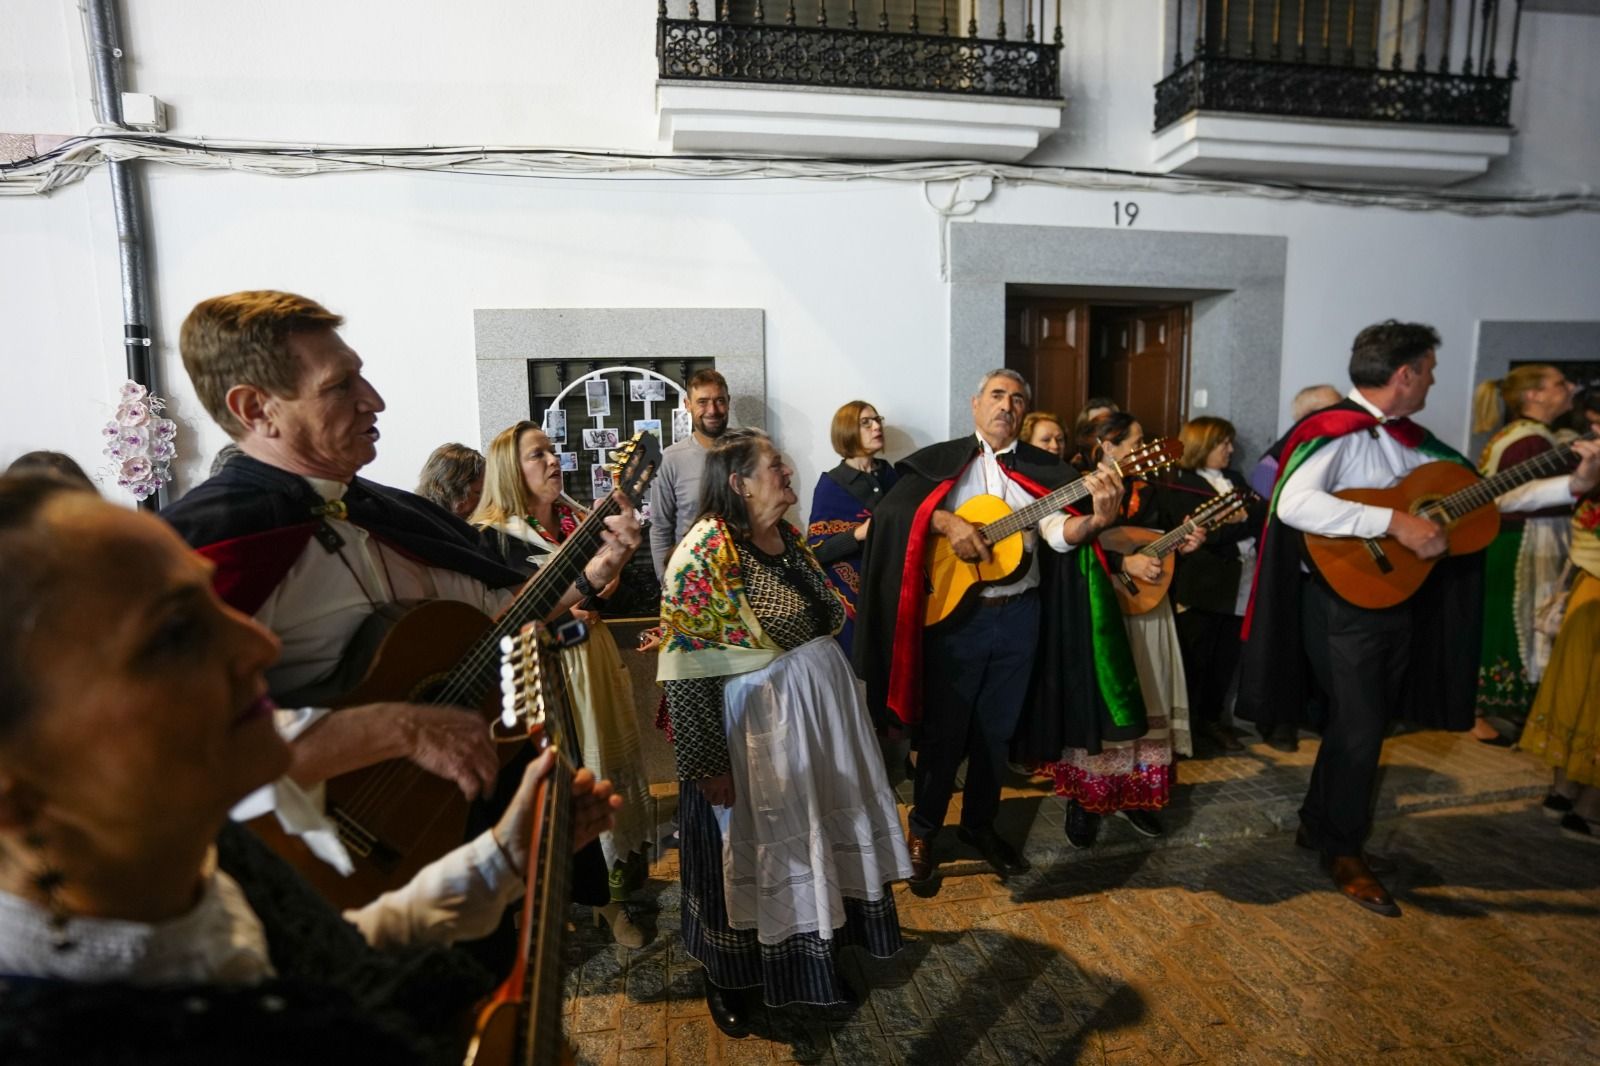 Las cruces de las calles Amargura y Andalucía, ganadoras en Añora